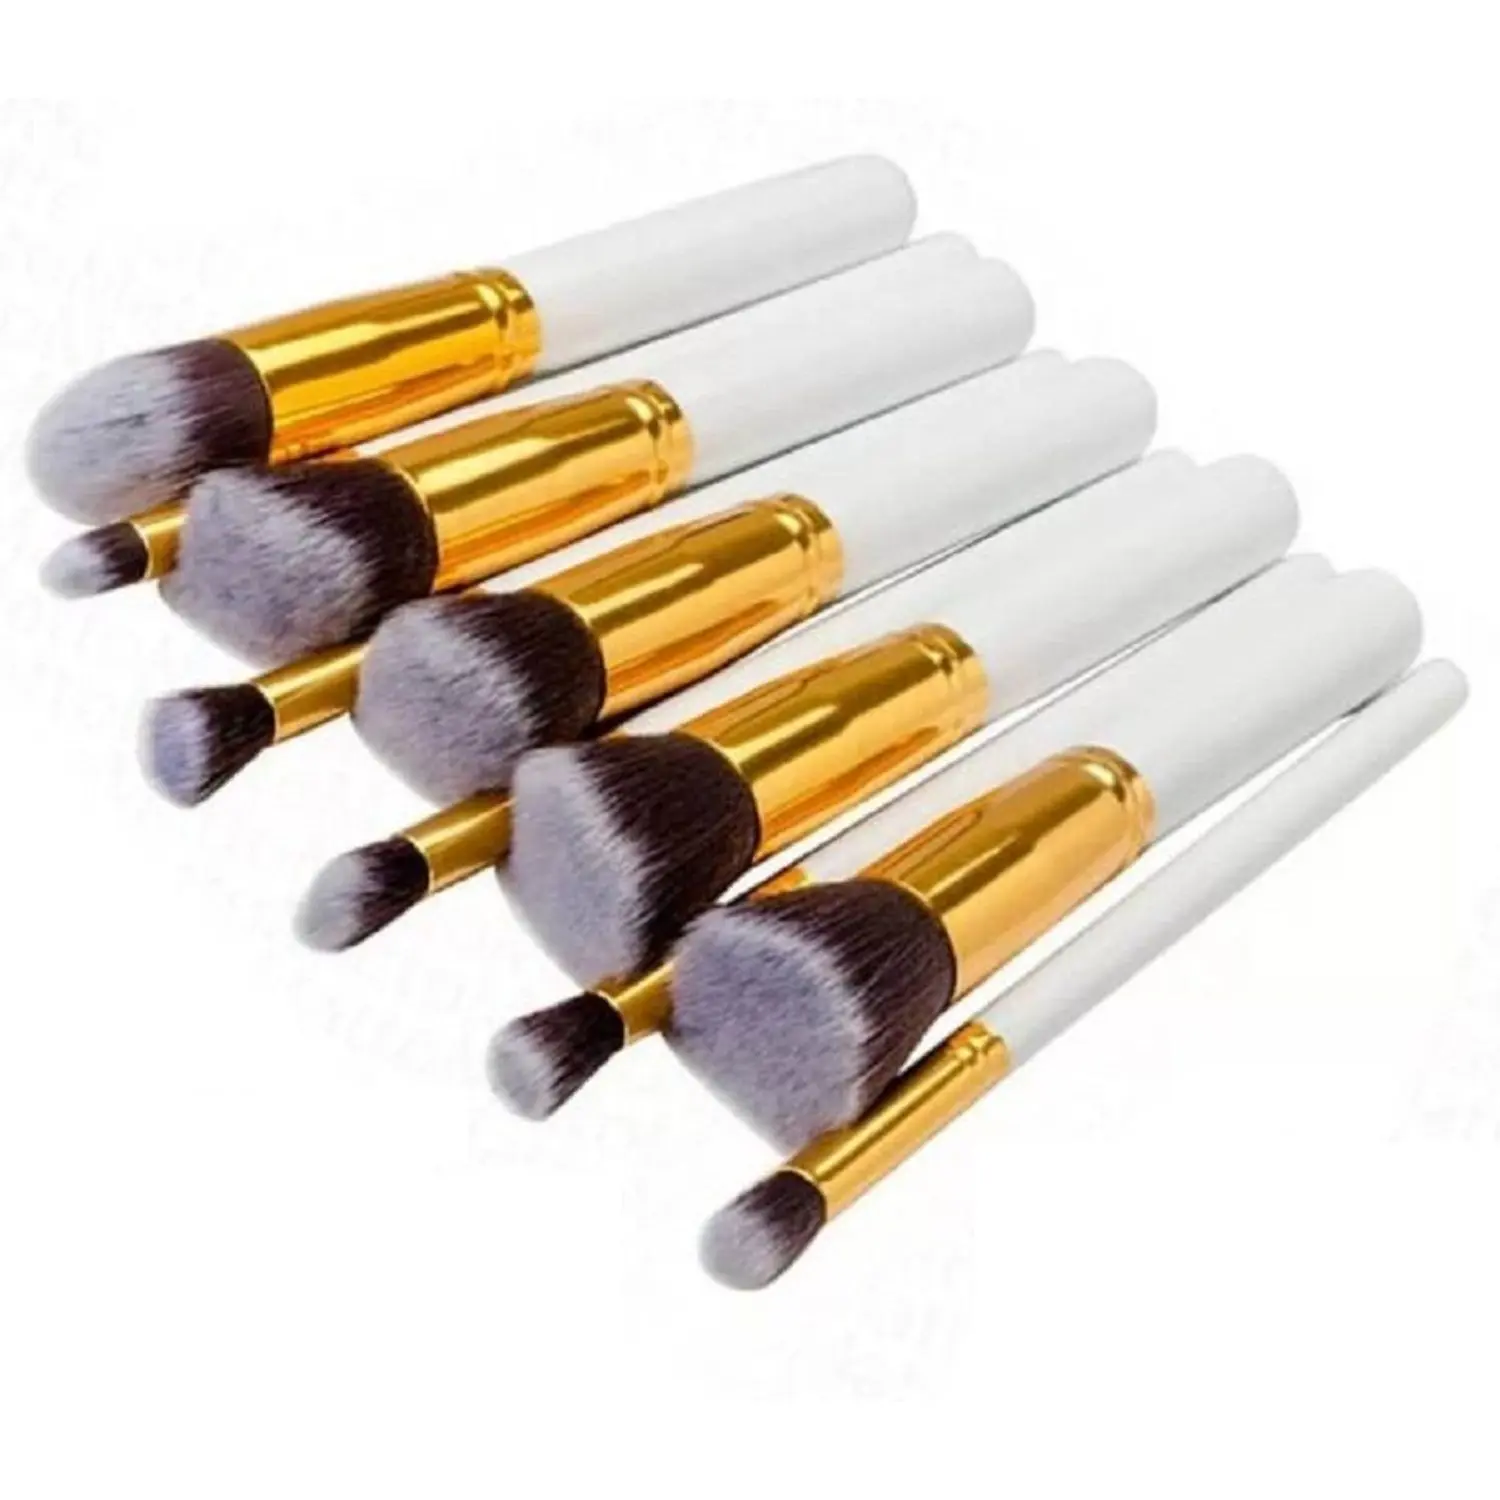 AY Professional Make Up Brush Set - Pack of 10, Color May Vary